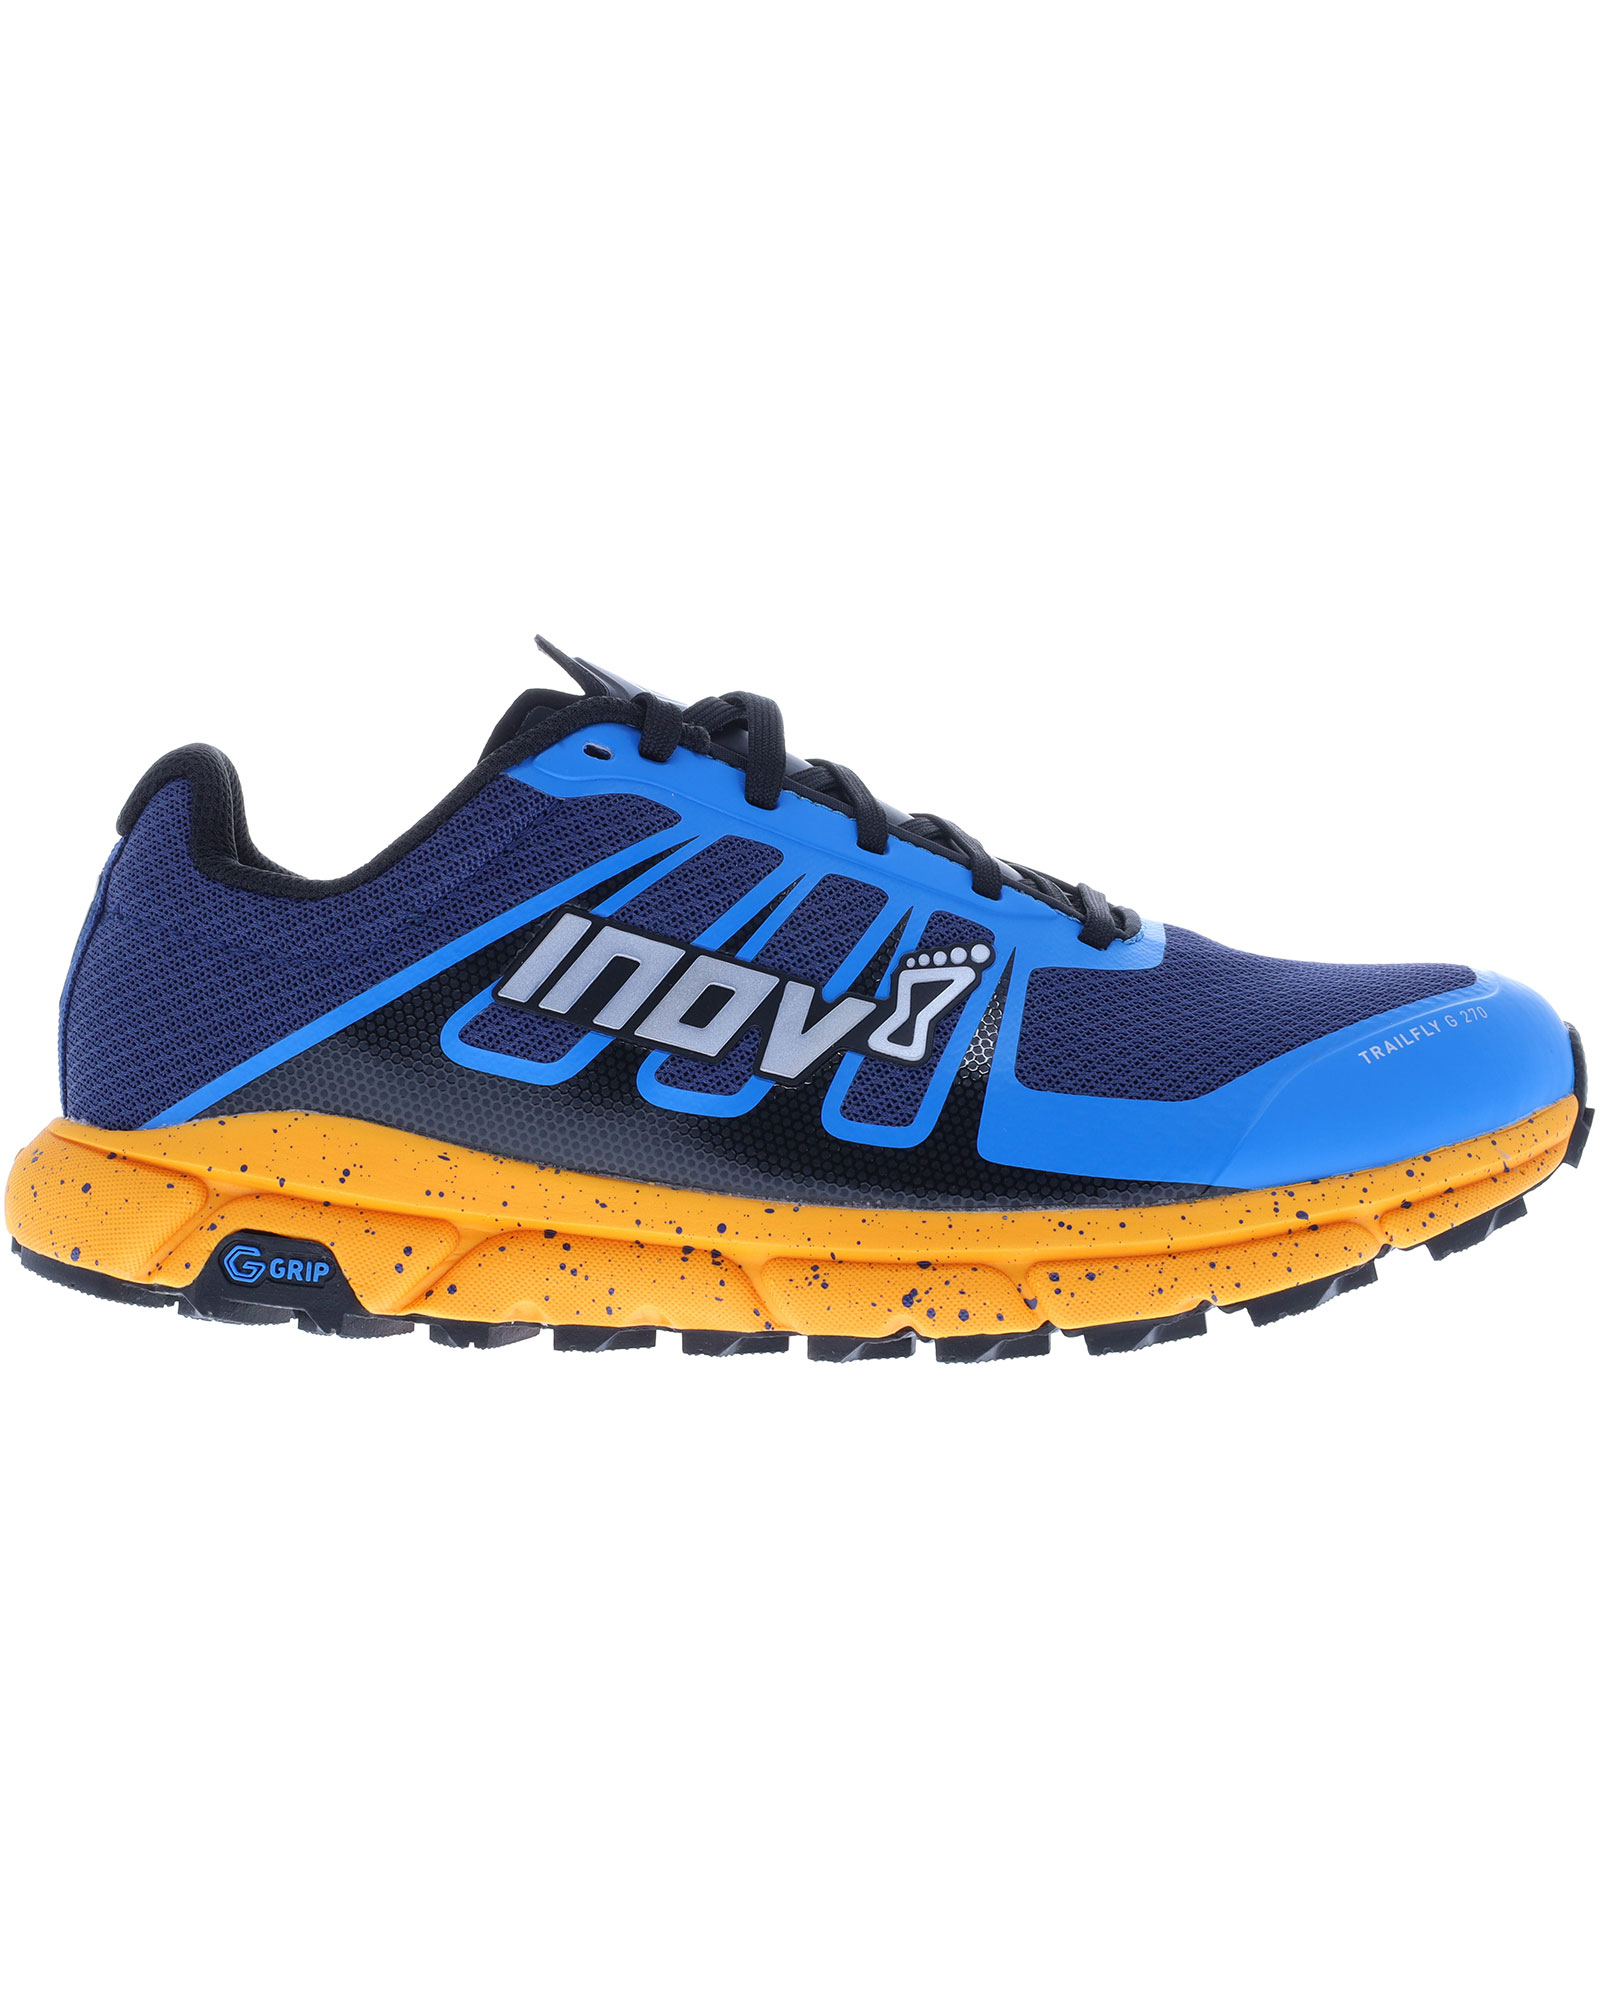 Inov 8 TrailFly G 270 V2 Men’s Trail Shoes - Blue/Nectar UK 8